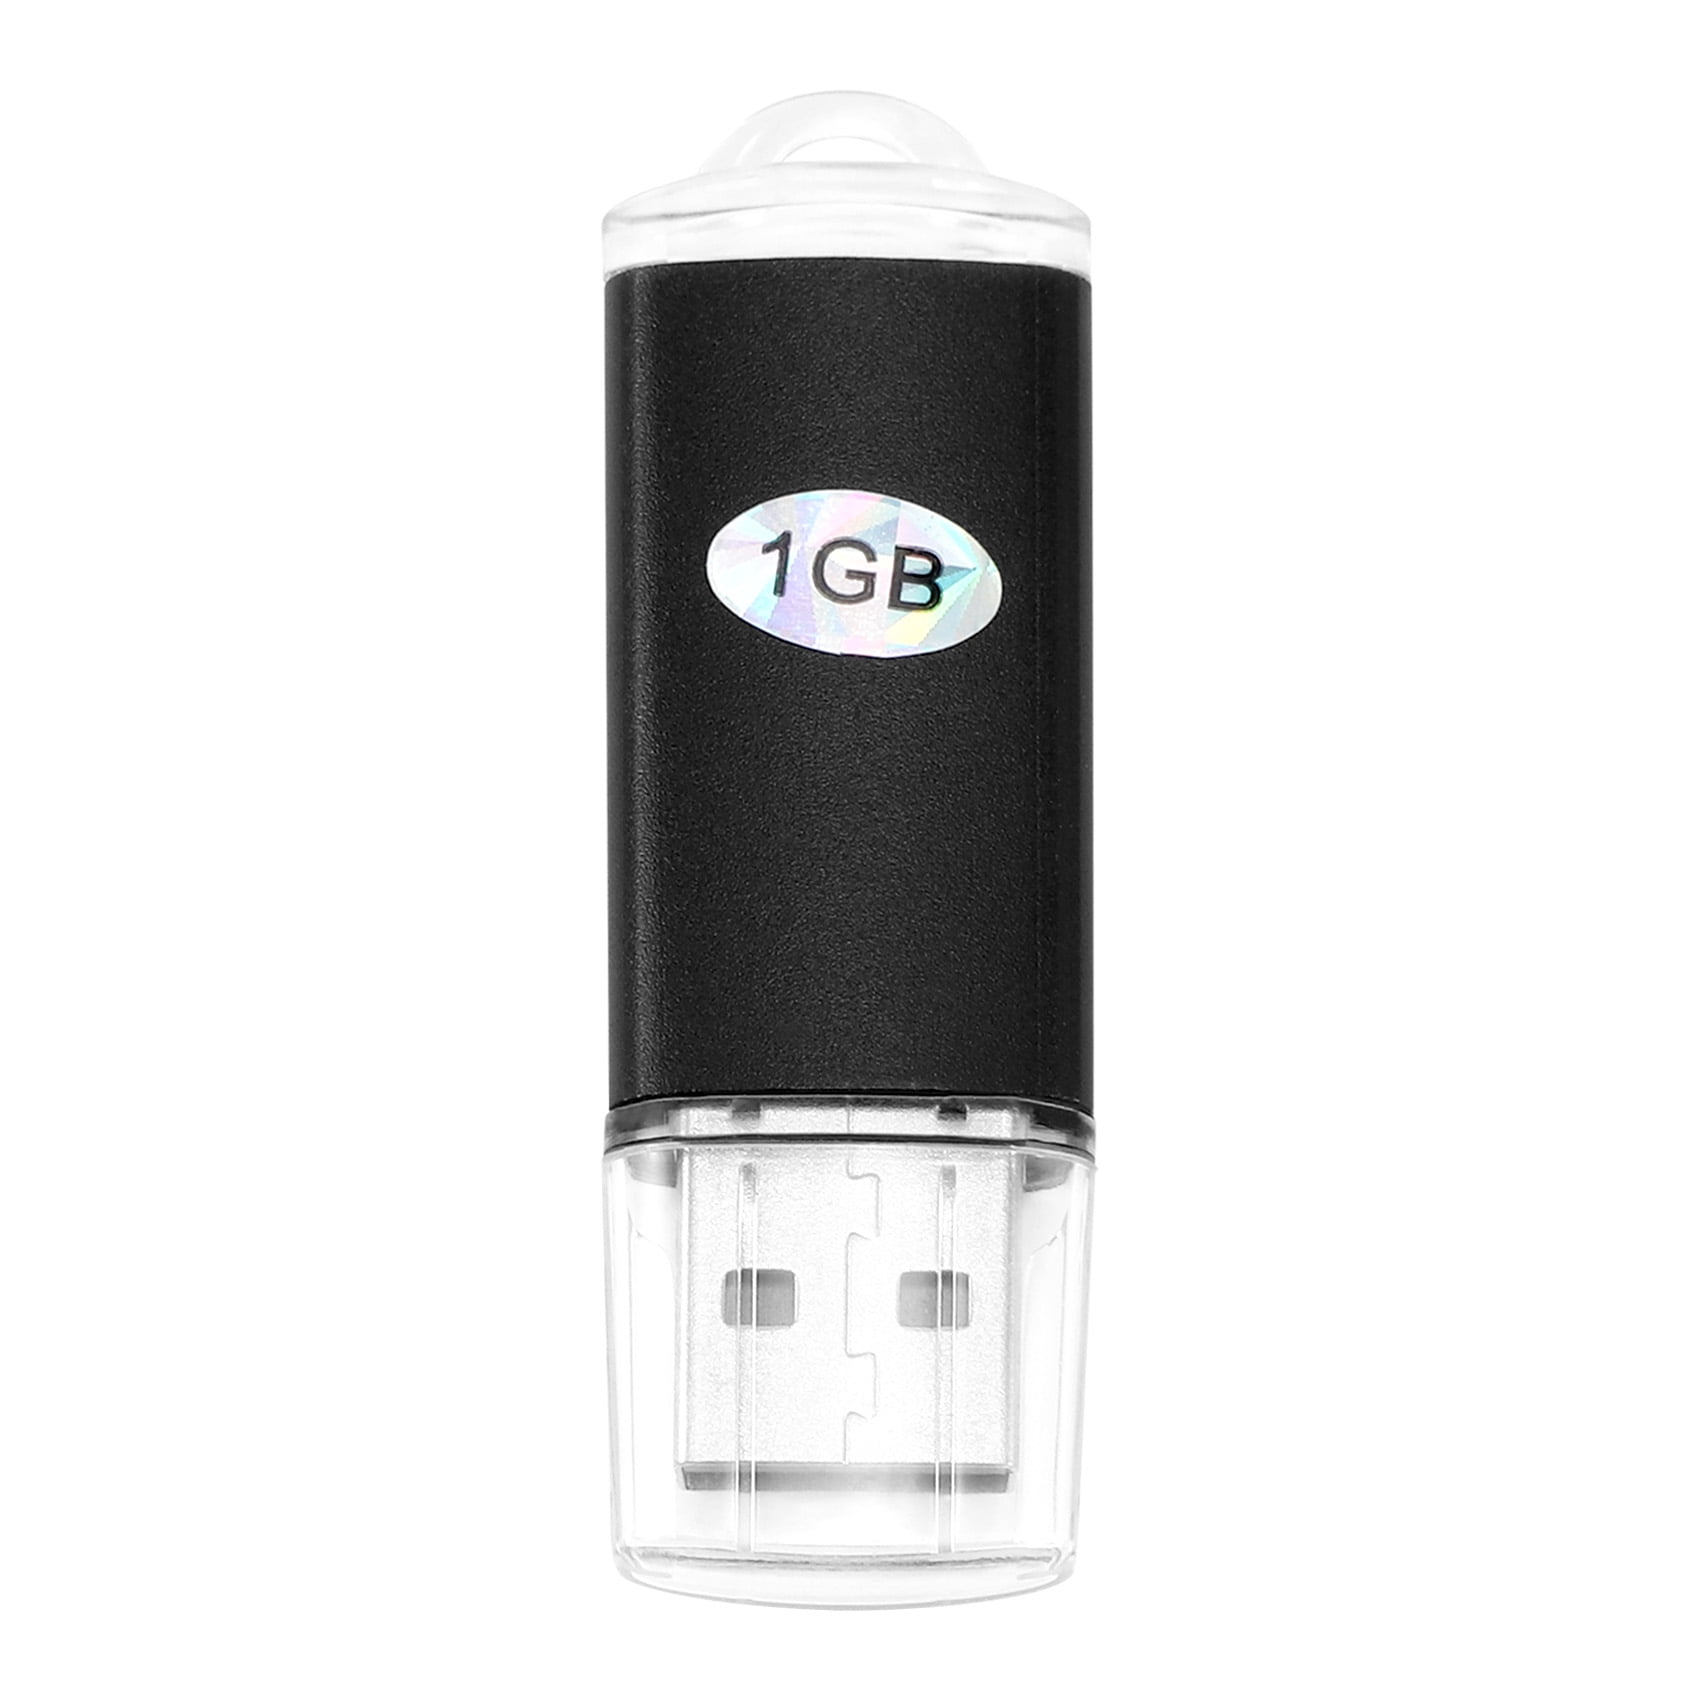 Raffinaderij onenigheid leven USB Memory Stick Flash Pen Drive U Disk for PS3 PC TV Color:Black  capacity:1GB - Walmart.com